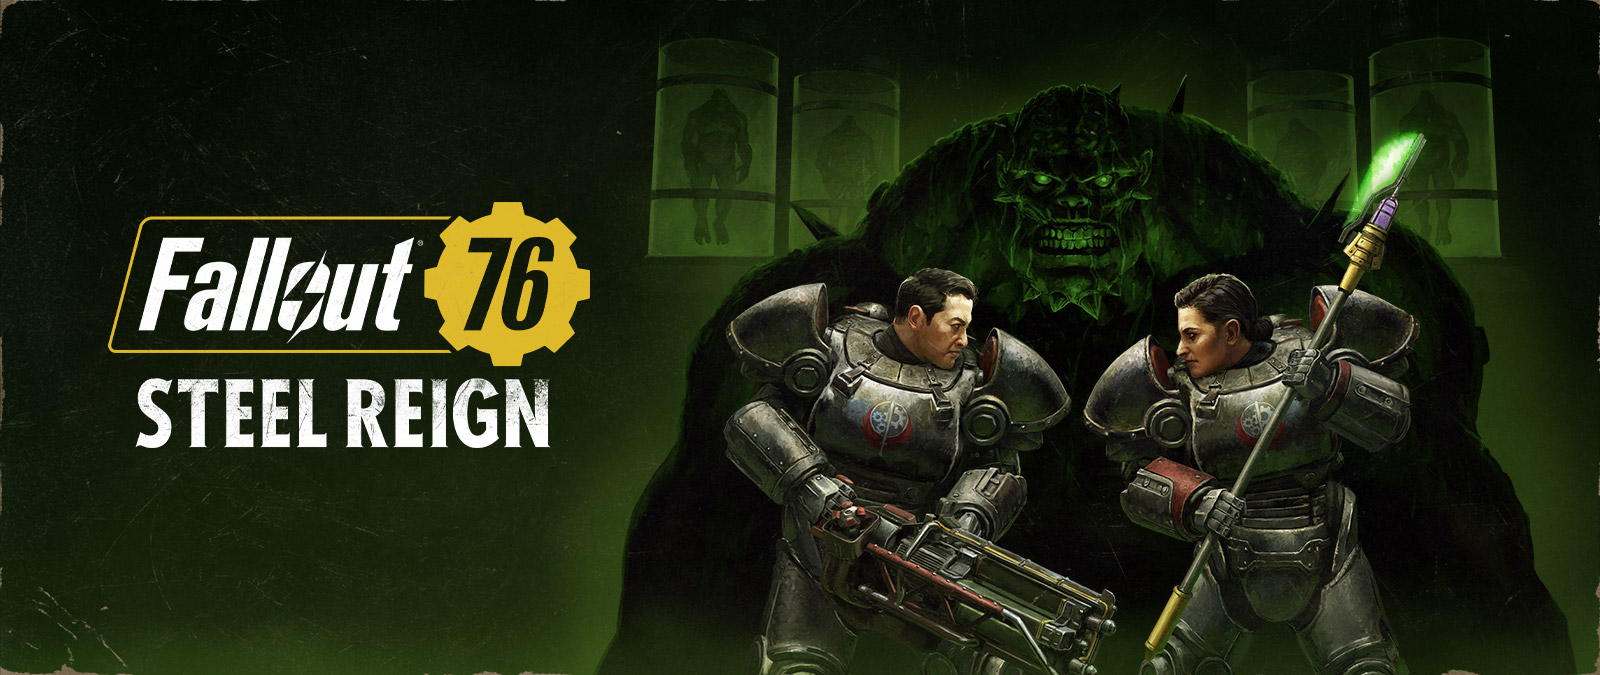 Fallout 76, Steel Reign, Twee personages in mech-pakken staan tegenover elkaar met een groot monster op de achtergrond.